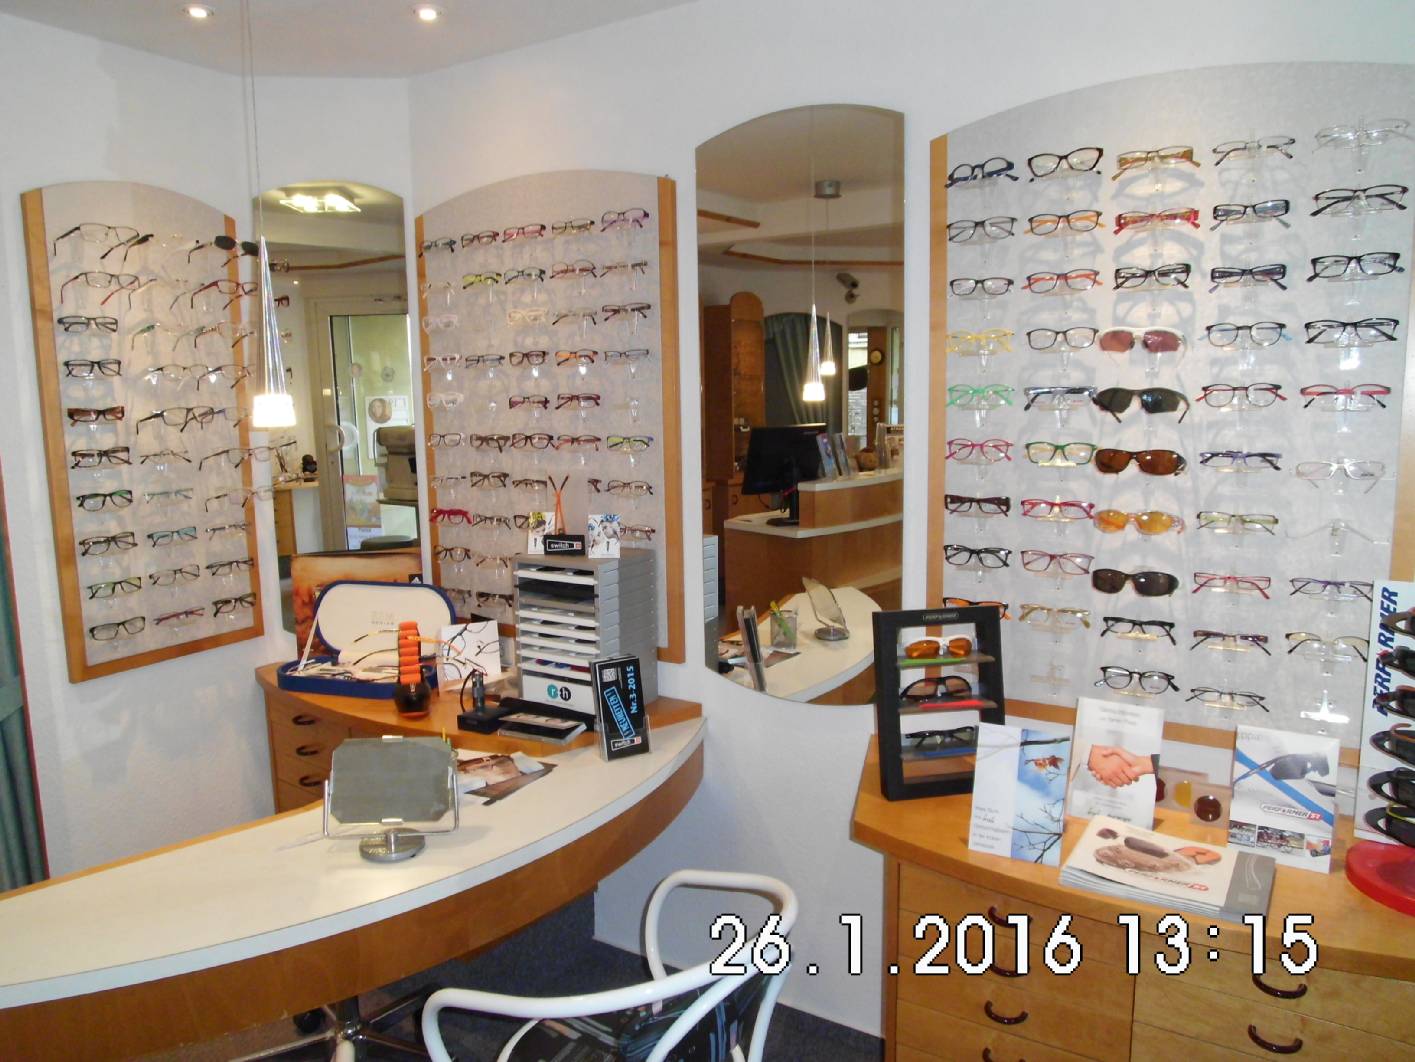 Sie suchen nach einem Optiker in der Nähe von Zeulenroda, der Sie kompetent zu Brillen und Kontaktlinsen berät? Dann sind Sie bei Augenoptik Jüchser richtig.